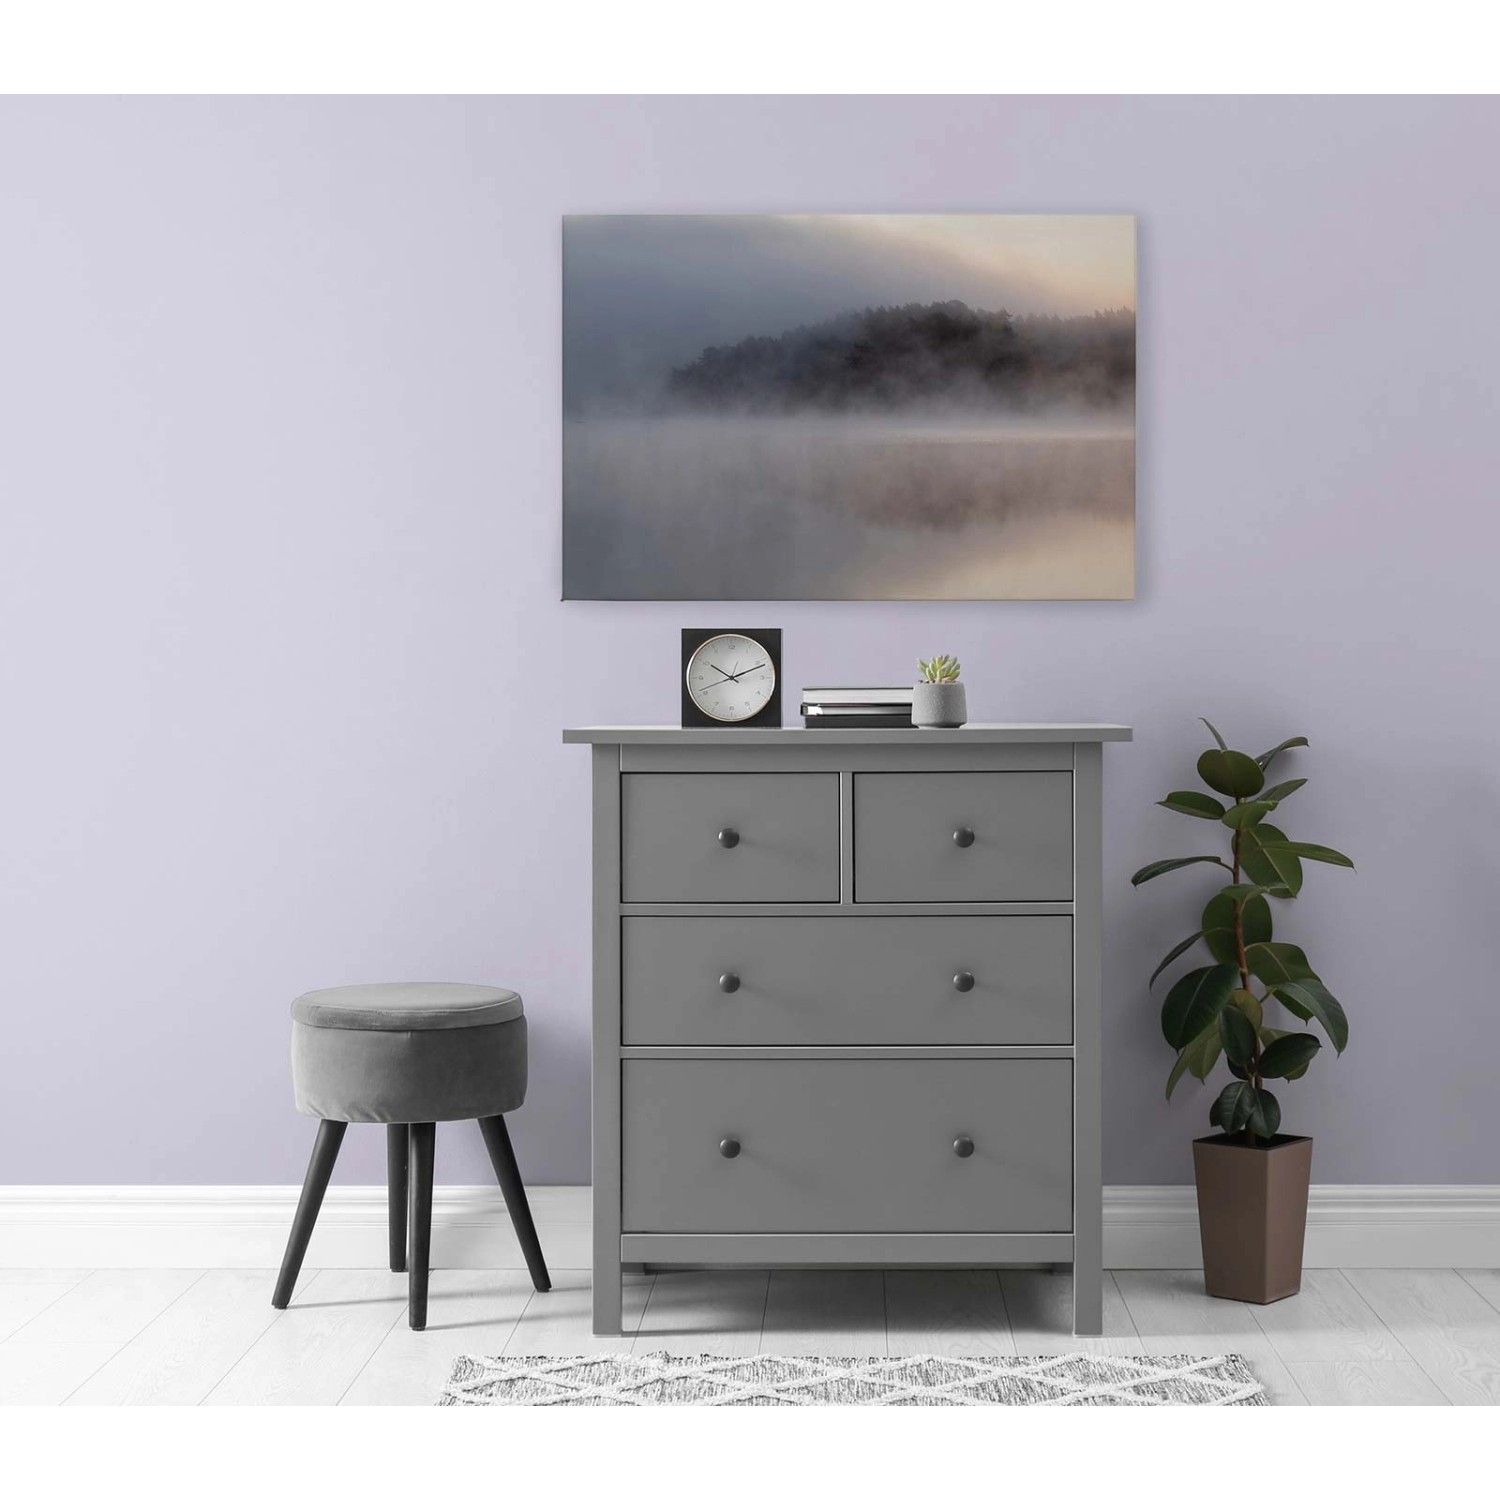 Bricoflor Bild Mit See In Nebel Landschaftsbilder Auf Leinwand In 90 X 60 Cm Wandbild Romantisch Ideal Für Schlafzimmer 